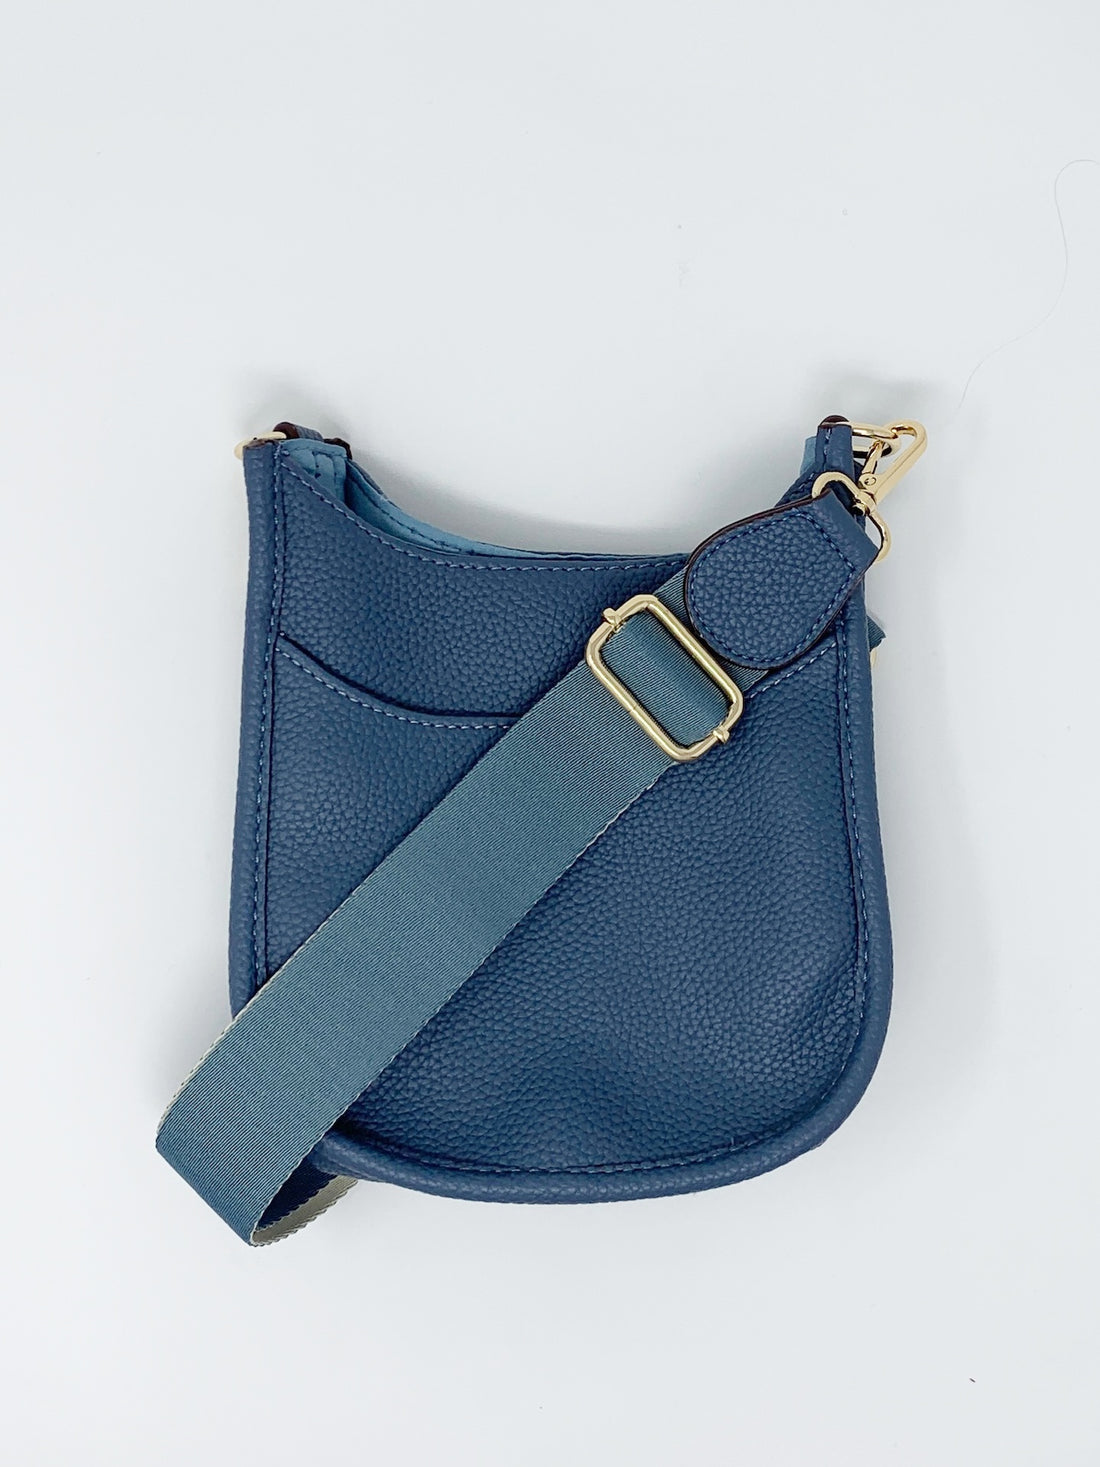 Mini Saddle Bag in Vegan Leather in Denim Blue